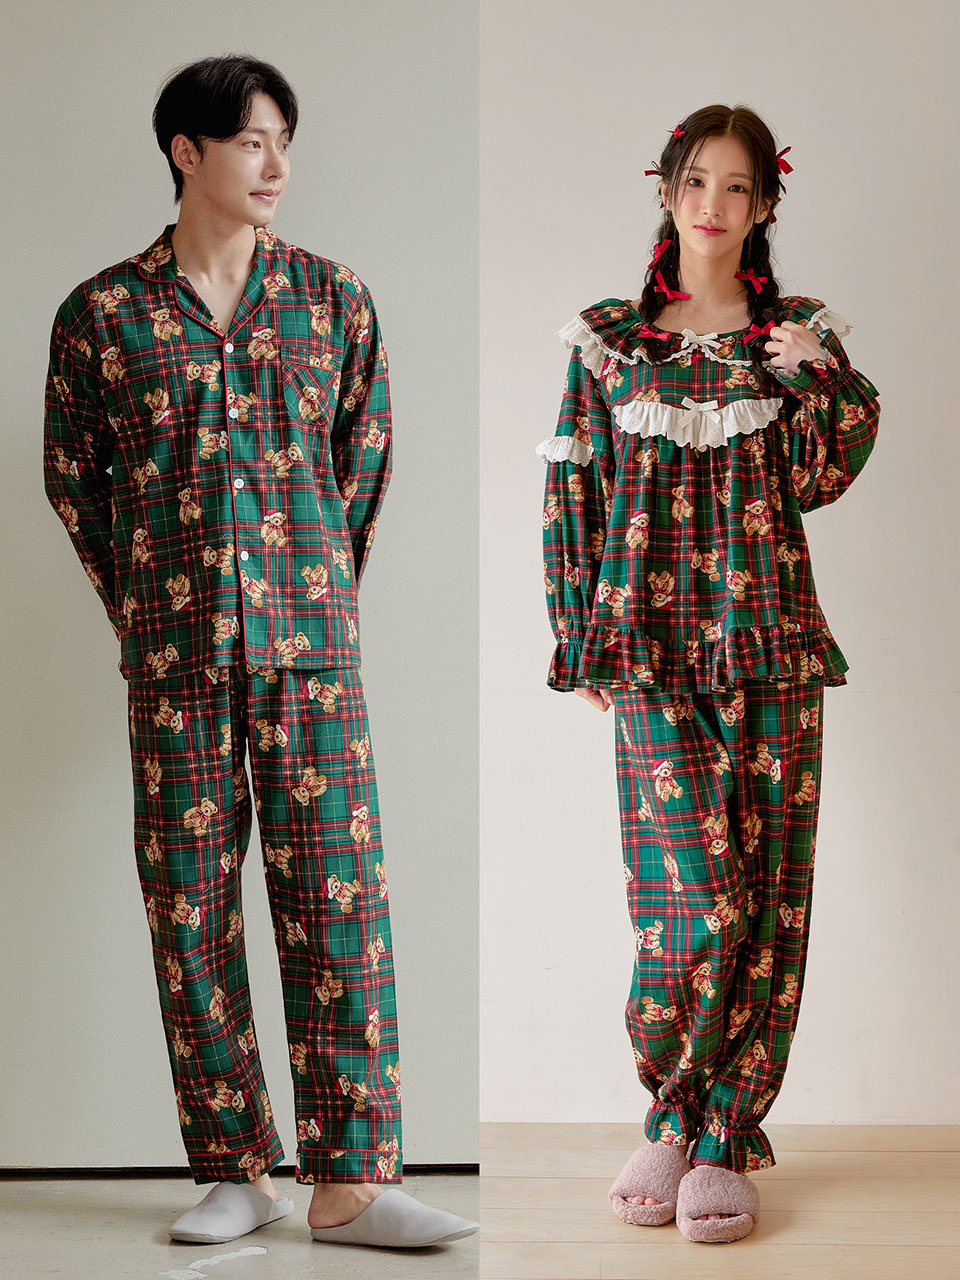 페일스 크리스마스 그린체크 커플 곰돌이 홈웨어 투피스 남녀공용 파자마 남성 여성 팬츠 잠옷세트